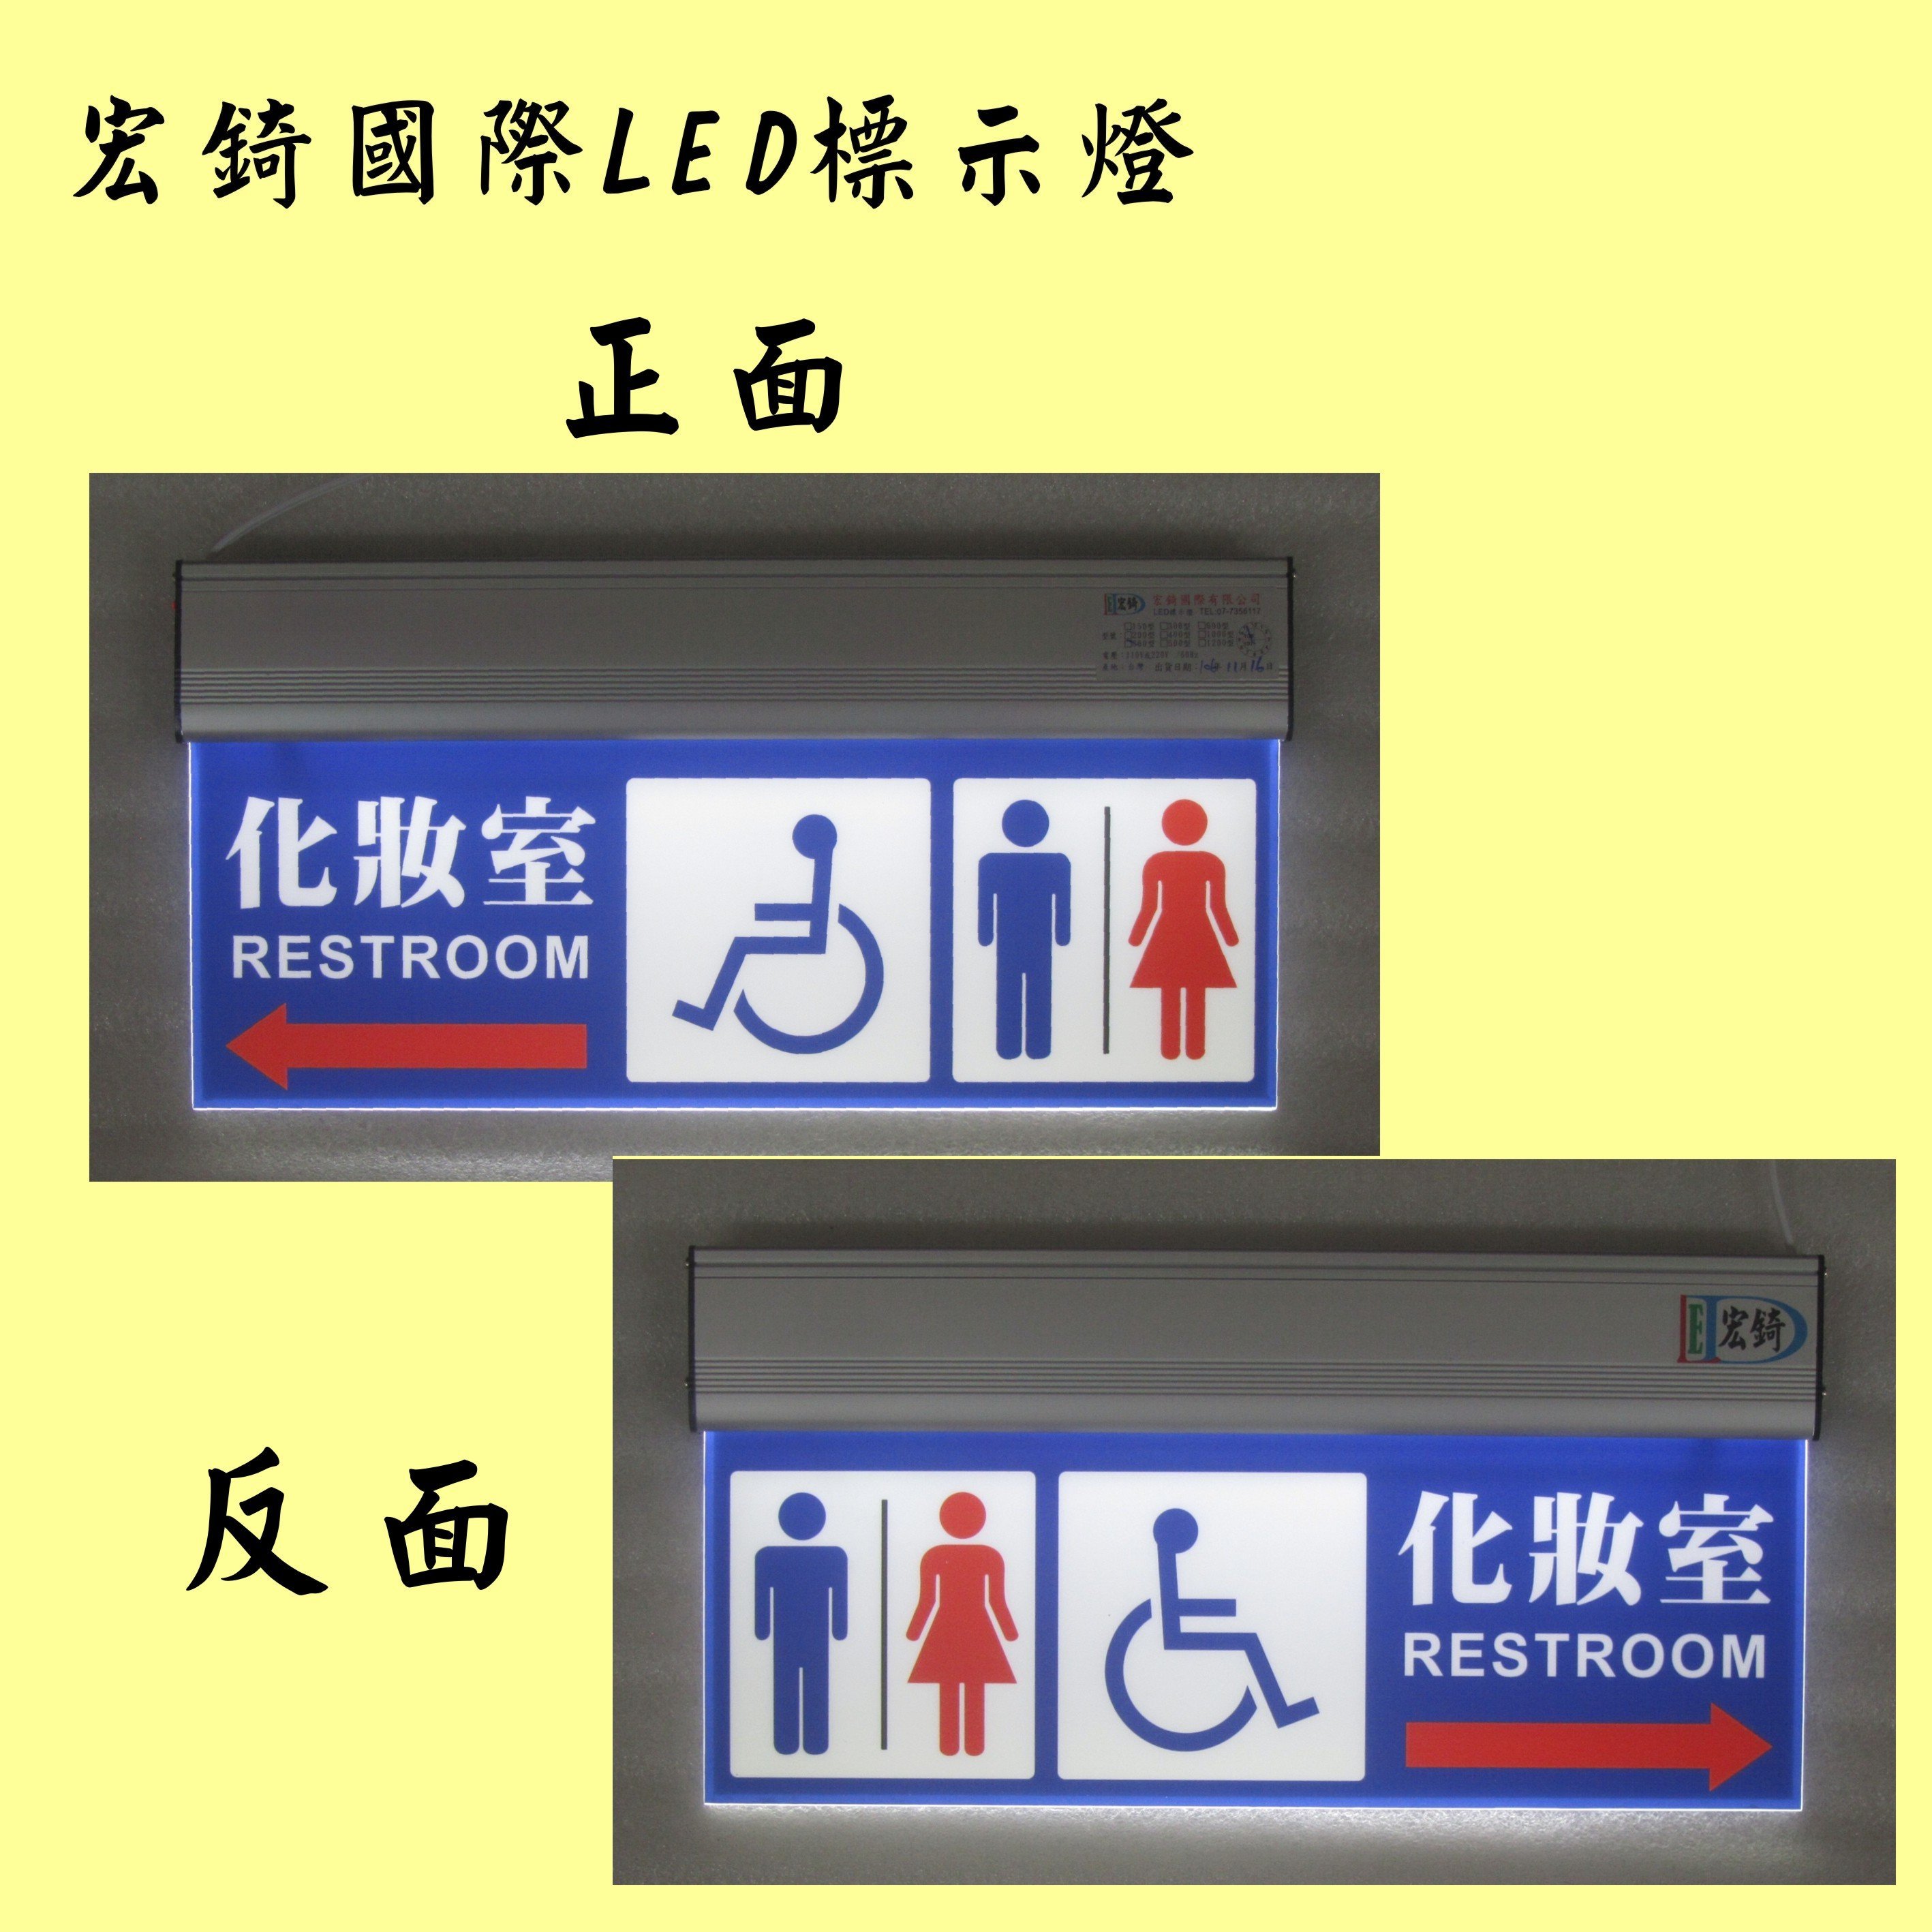 無障礙廁所 親子廁所 方向指示燈 雙面標示 LED廁所燈牌 推薦 高雄標示燈 宏錡LED